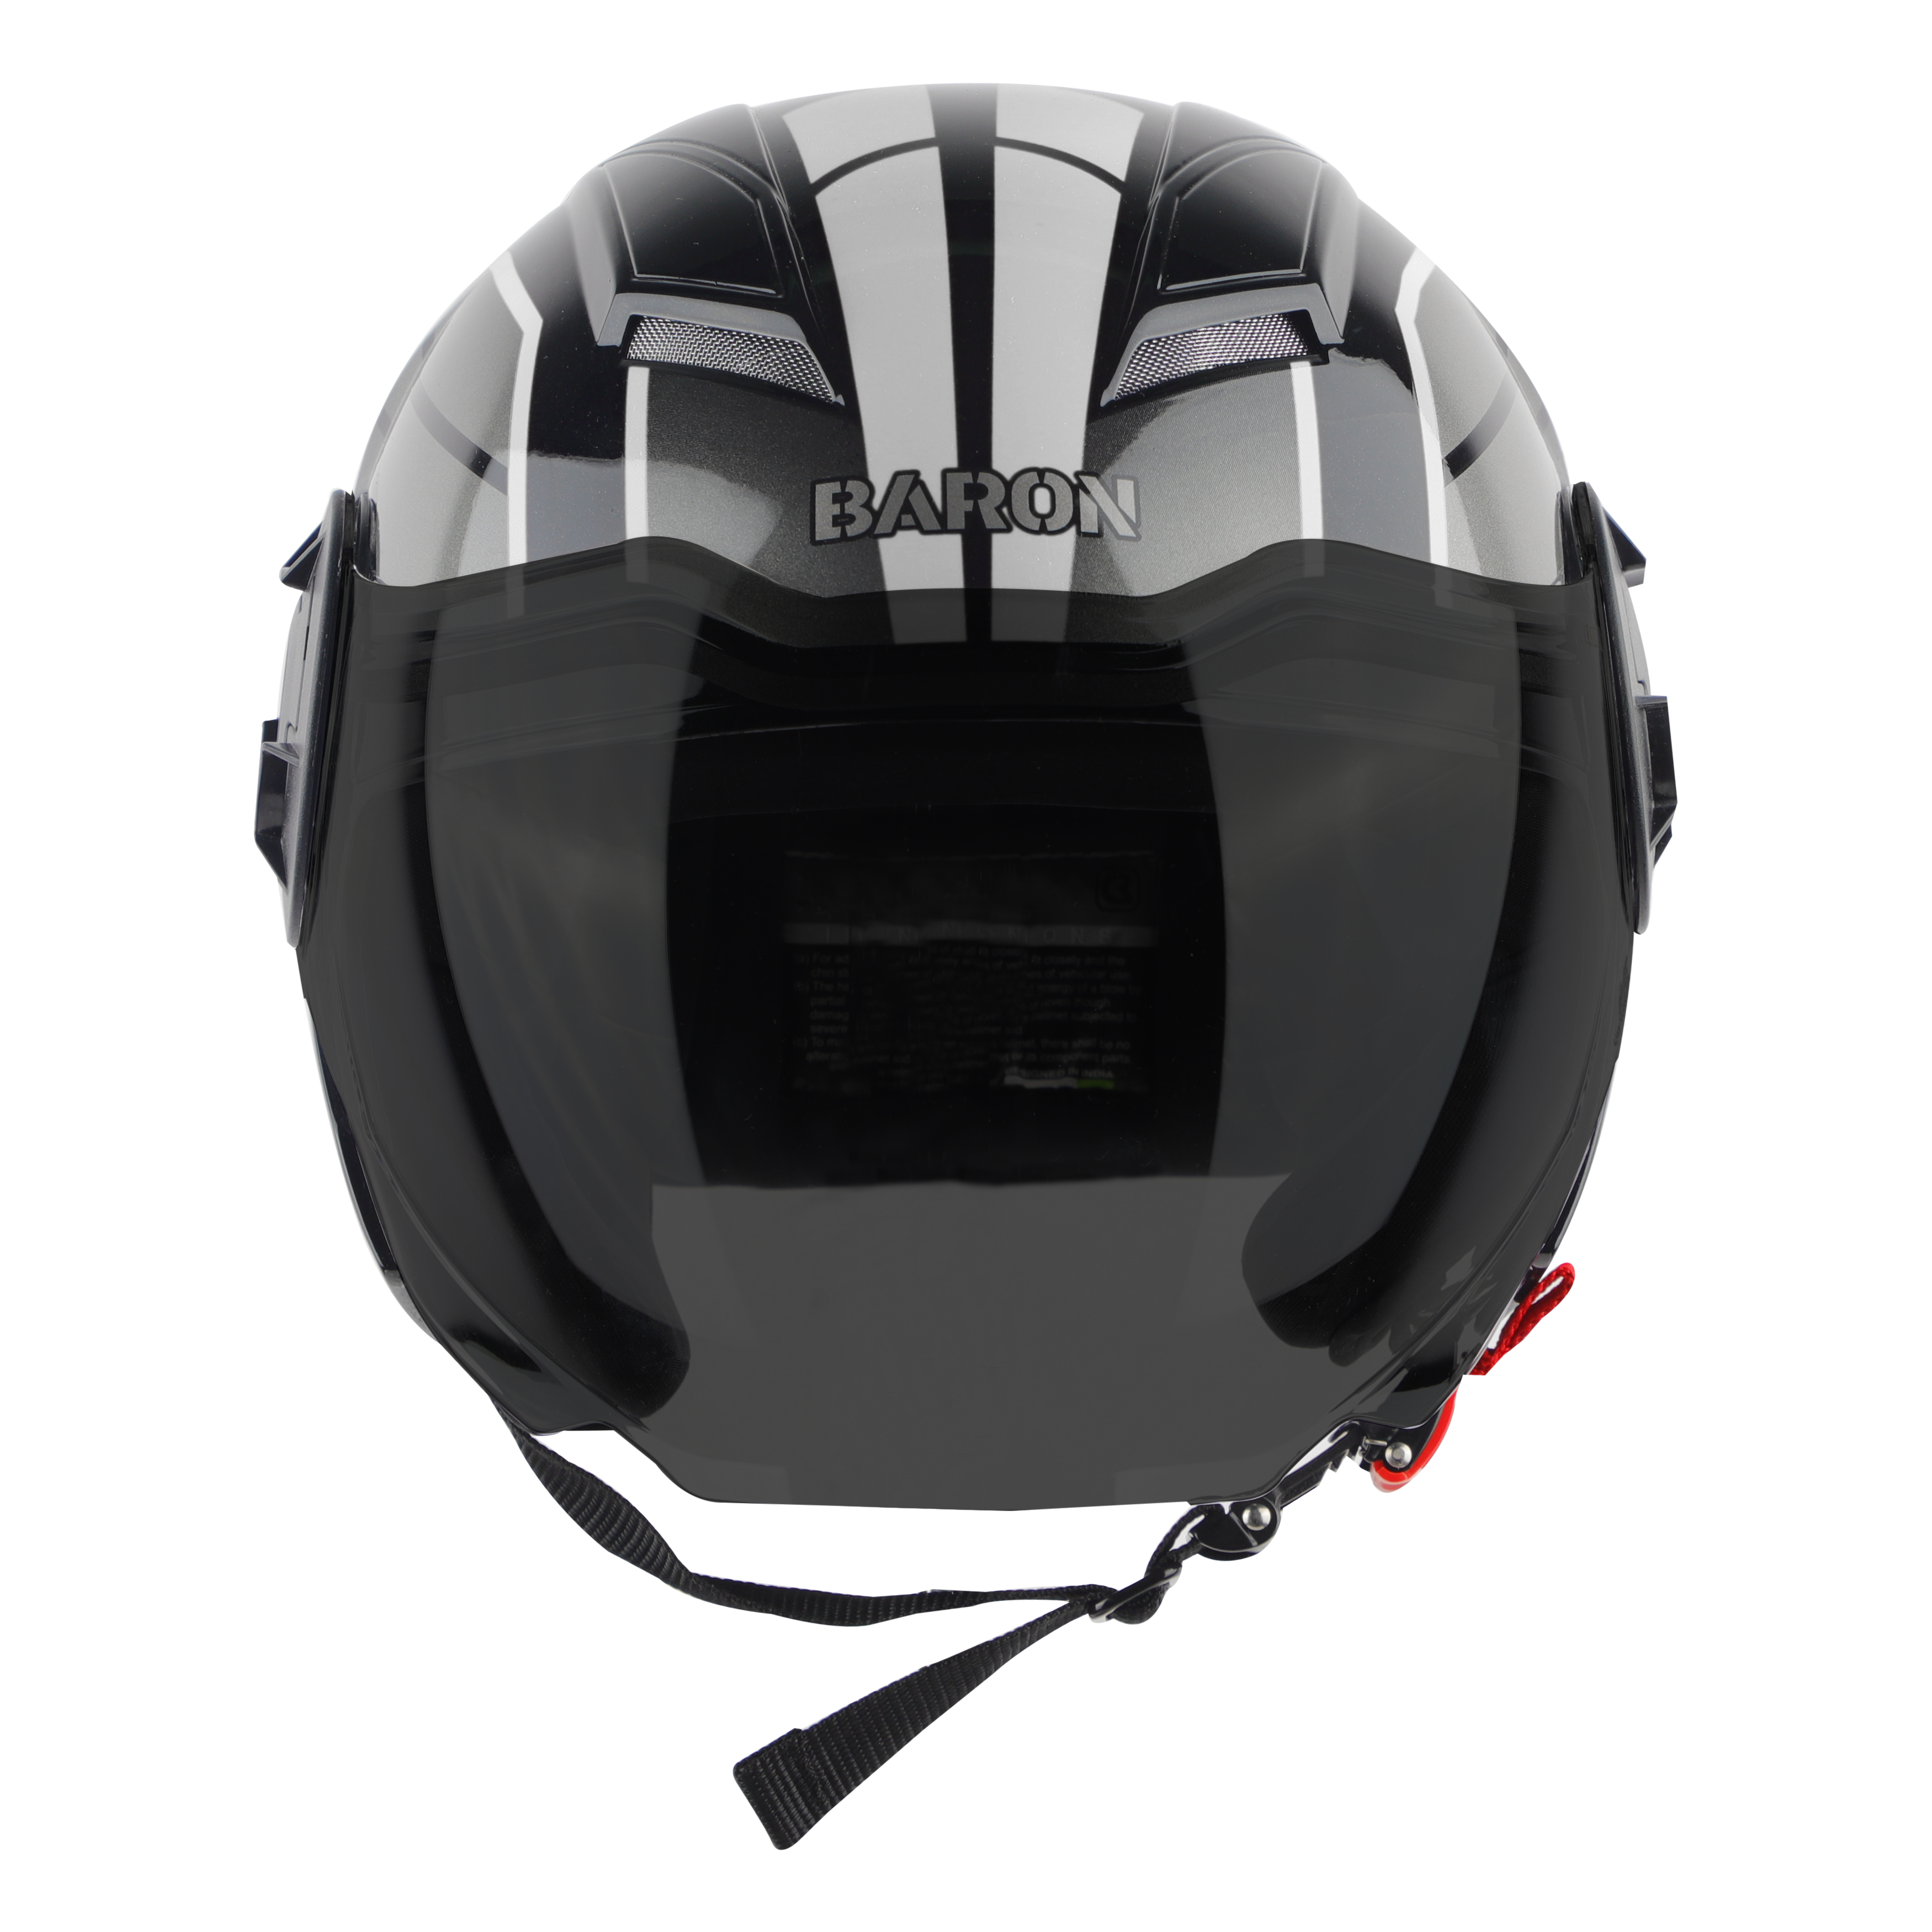 Steelbird SBH-31 Baron ISI Certified Open Face Helmet For Men And Women (Matt Black Grey With Smoke Visor)